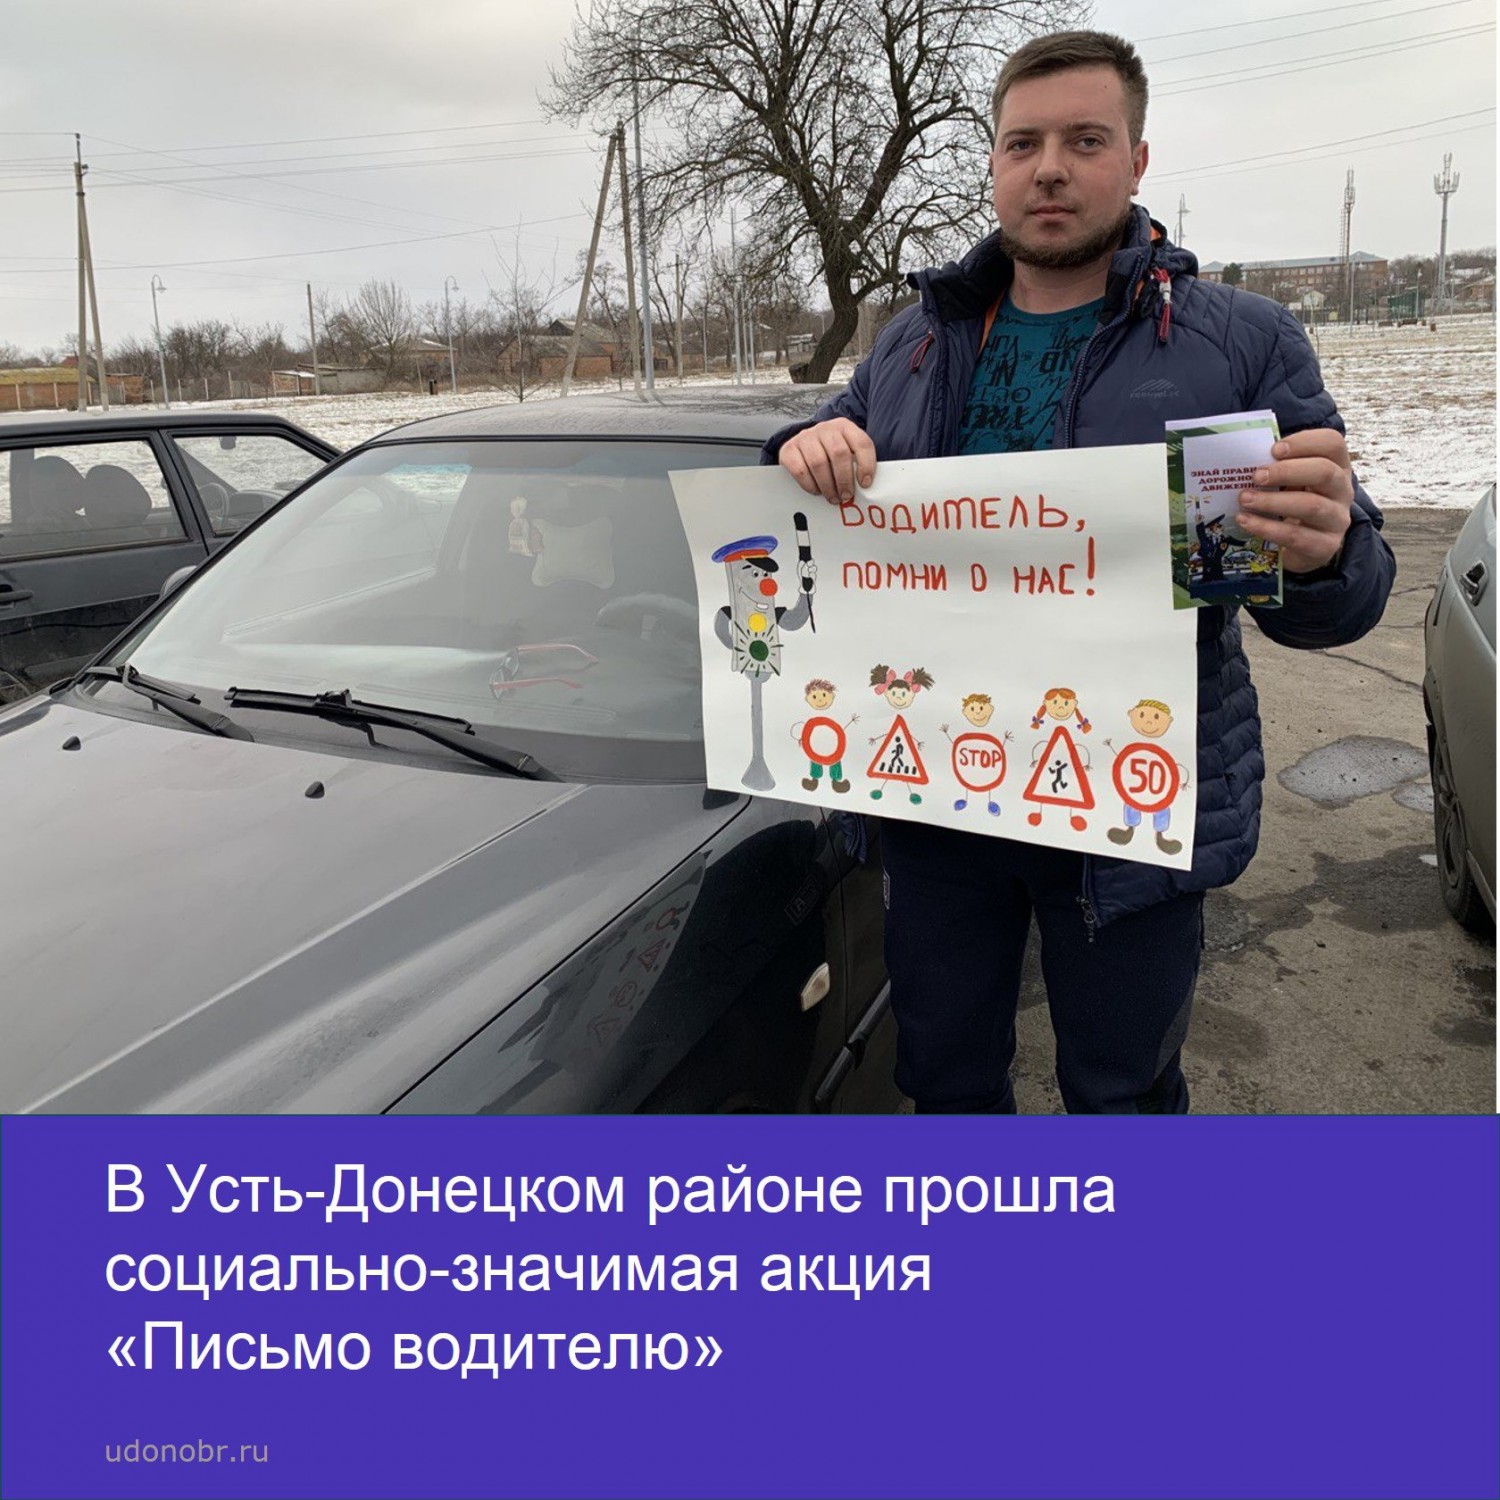 В Усть-Донецком районе прошла социально-значимая акция «Письмо водителю»